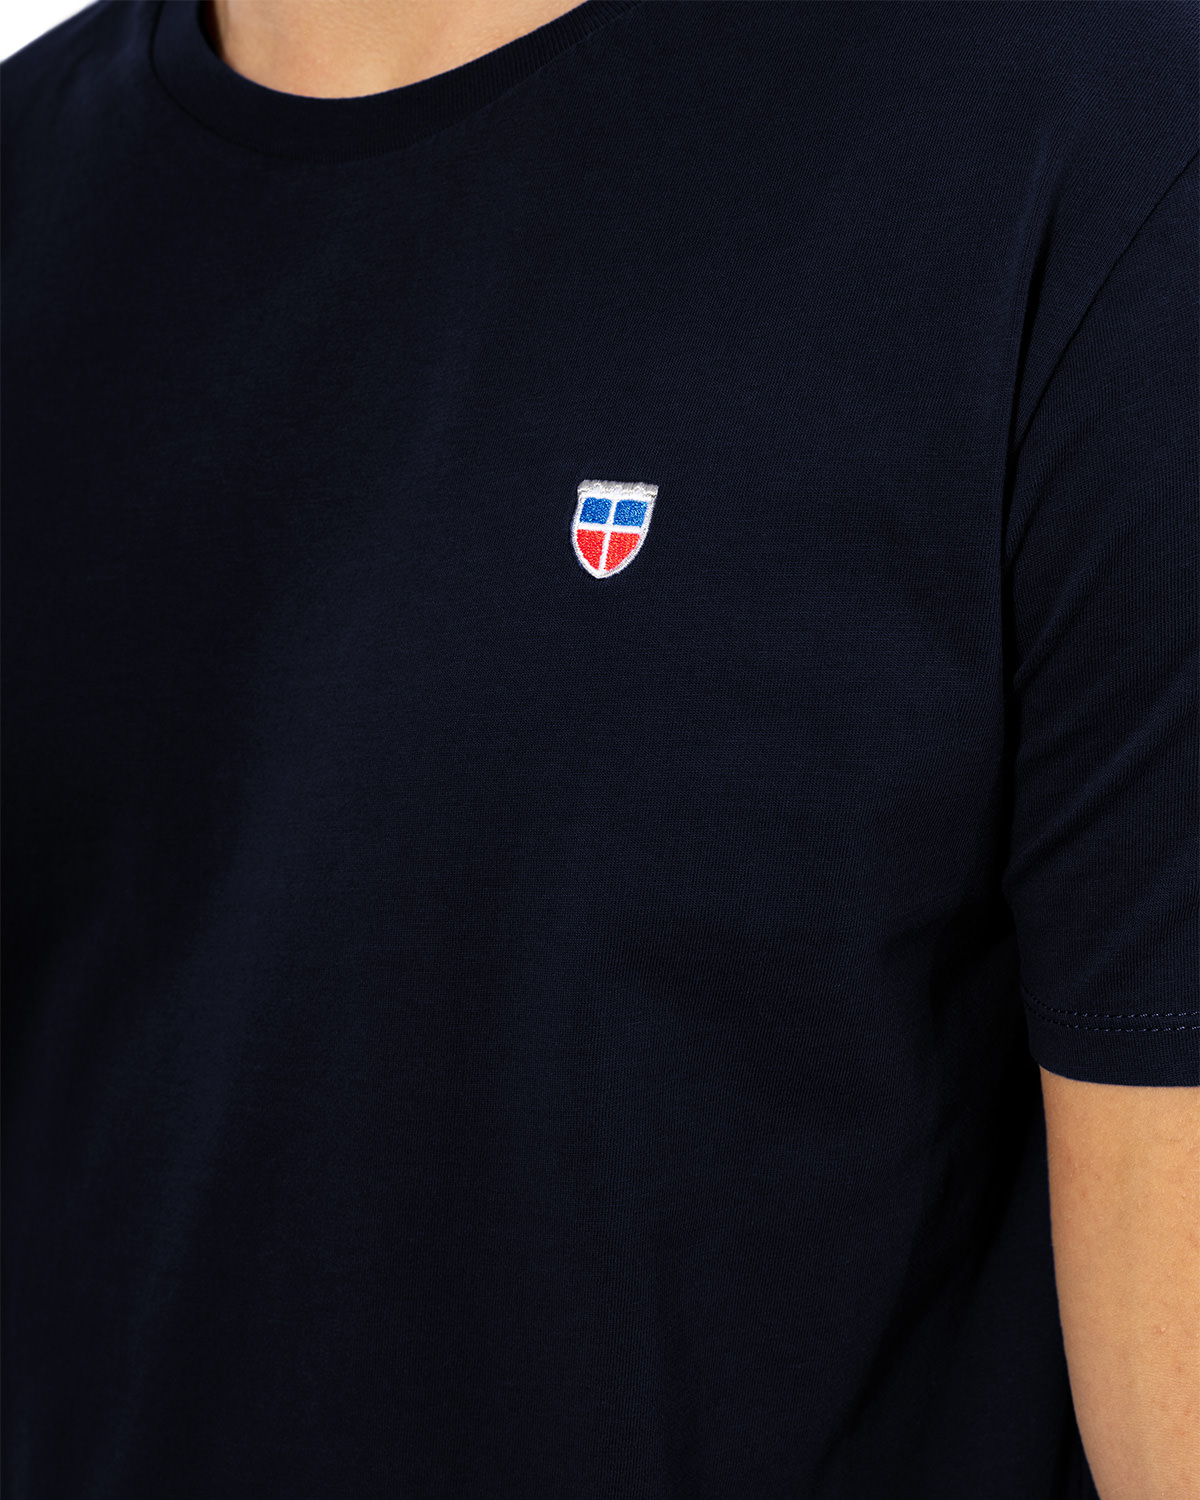 Seiten-Ansicht des hochwertig bestickten Männer T-Shirt „PAUL“ in der Farbe Navy-Blau von der Saarland Marke Lasarre mit Logo-Stickerei von dem LASARRE-Wappen in Blau, Weiß, Rot auf der linken Brust und dem blauen LASARRE Markenzeichen am Saum